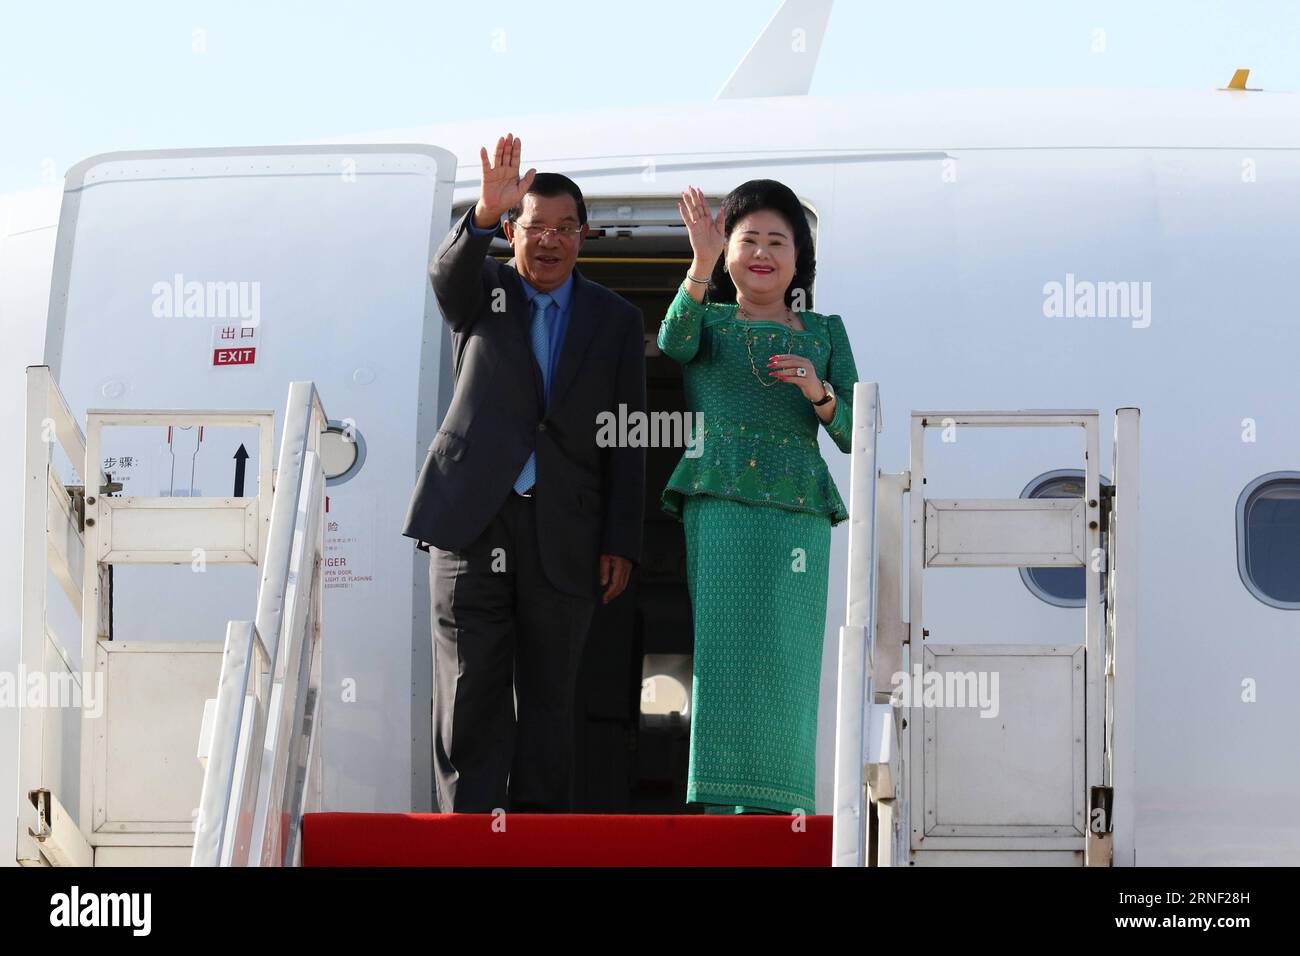 (160714) -- PHNOM PENH, 14 juillet 2016 -- le Premier ministre cambodgien Samdech Techo Hun Sen et son épouse Bun Rany geste depuis un avion à Phnom Penh le 14 juillet 2016. Hun Sen s'est envolé jeudi pour Ulan Bator, la capitale mongole, pour la 11e rencontre Asie-Europe (ASEM), qui se tiendra du 15 au 16 juillet. CAMBODGE-PHNOM PENH-PM-ASEM-DEPART SOVANNARA PUBLICATIONXNOTXINXCHN Banque D'Images